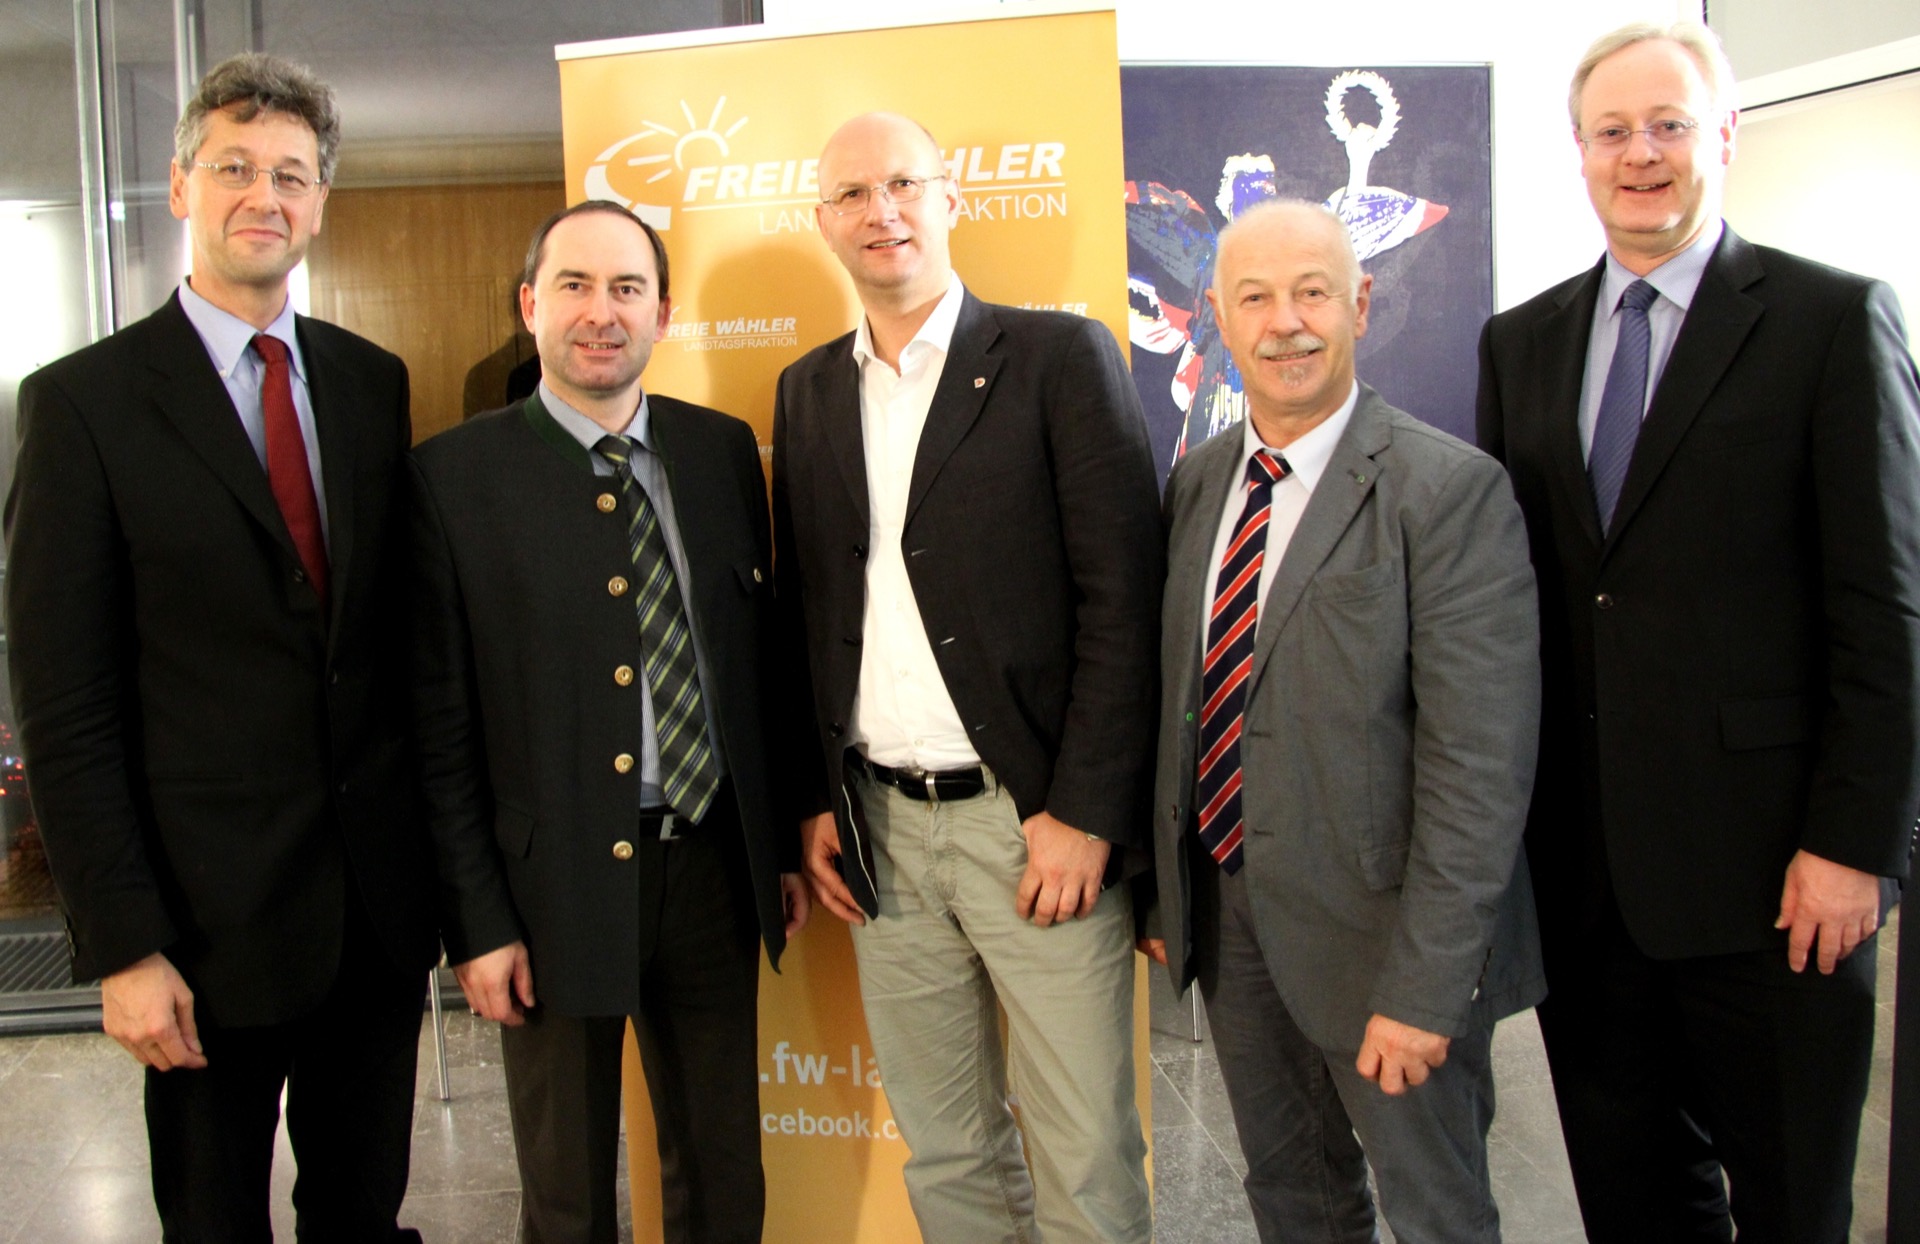 Unser Foto zeigt (v.l.) die Abgeordneten Prof. Dr. Michael Piazolo, Hubert Aiwanger, Christoph Schulze, Benno Zierer und Bernhard Pohl.